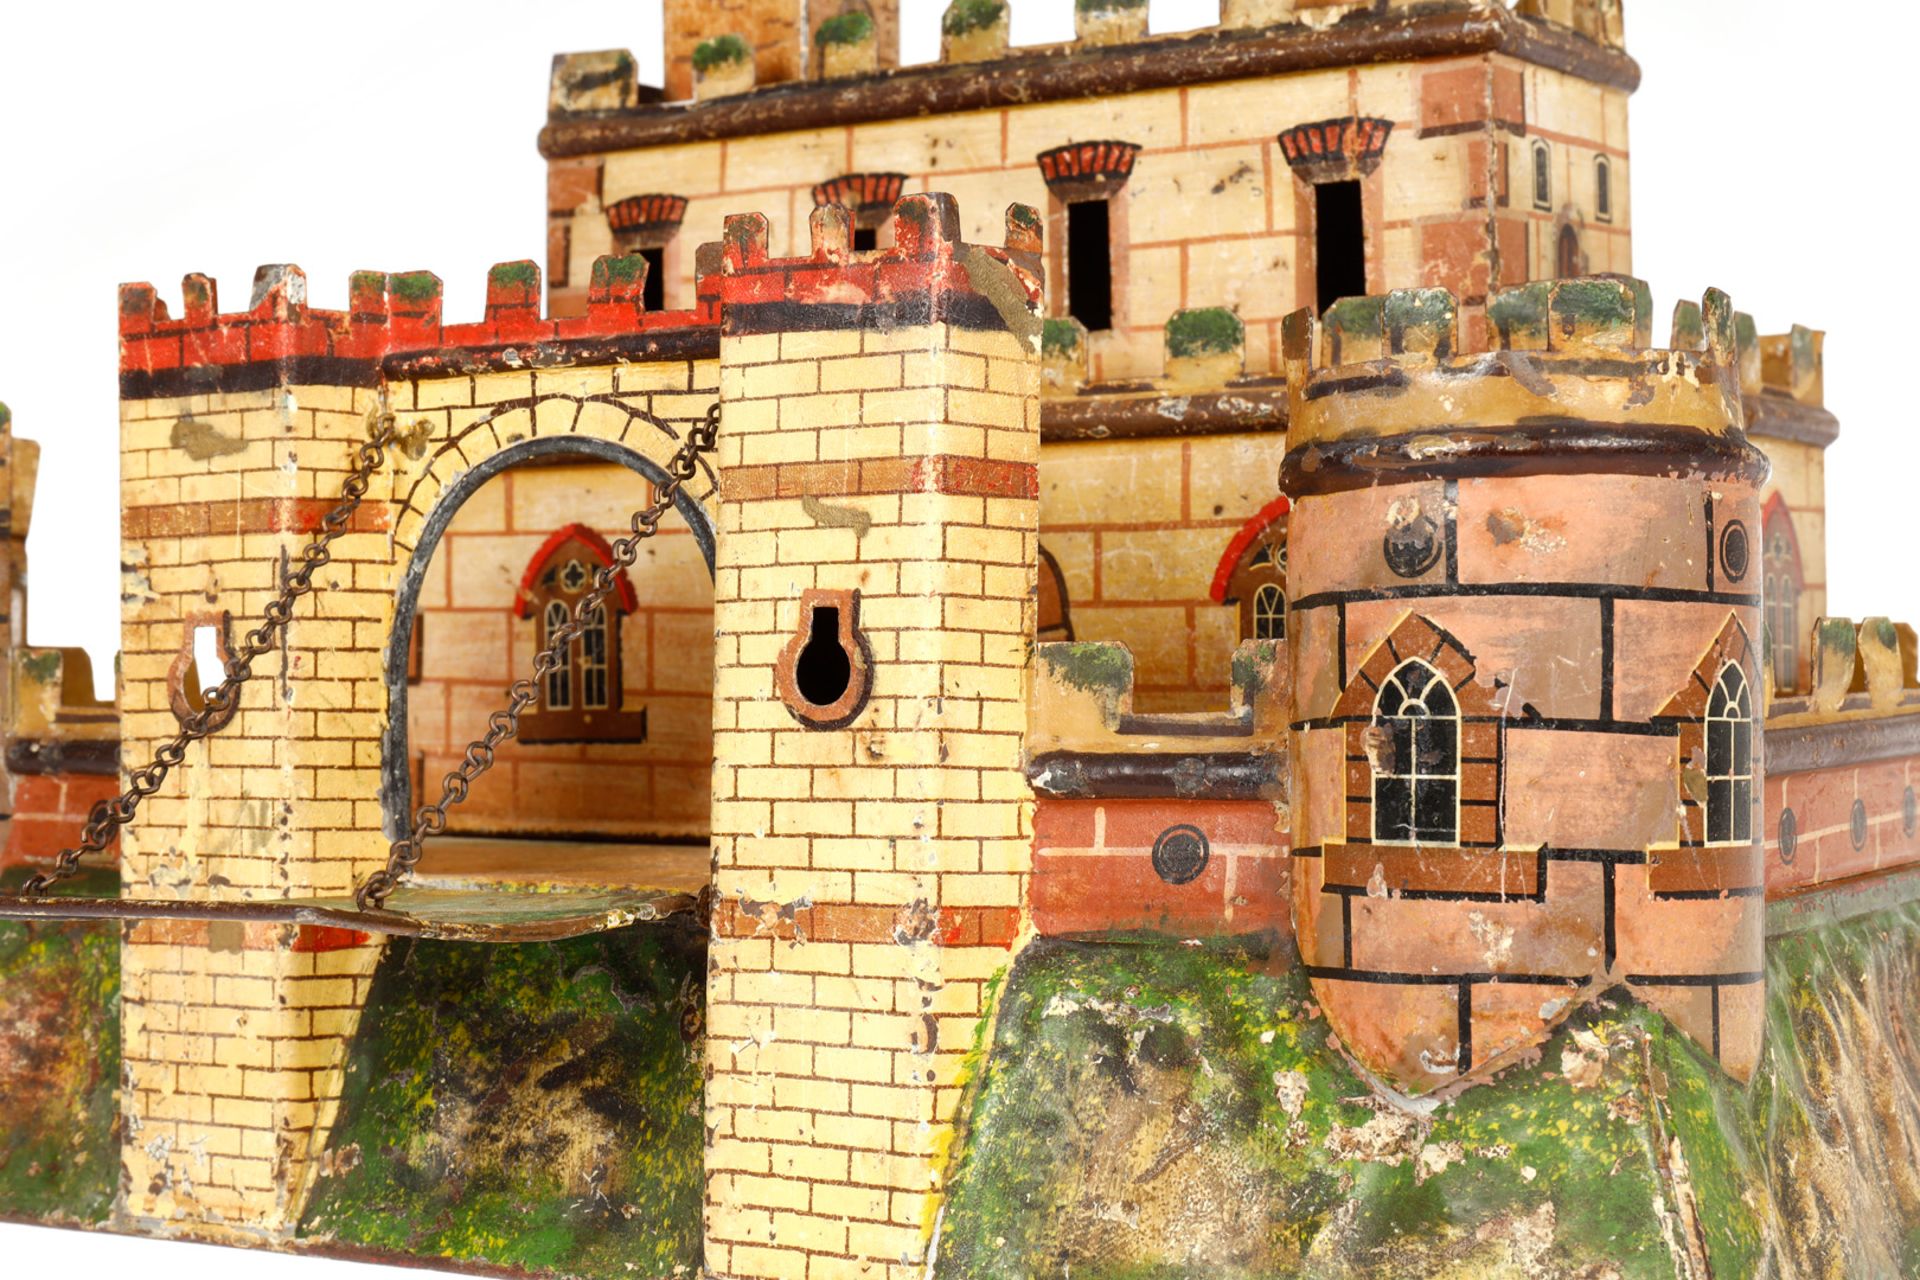 Märklin Festung 8131, uralt. Felsplateau mit Umfassungsmauer, Ecktürmen und durch Zugbrücke - Bild 4 aus 5